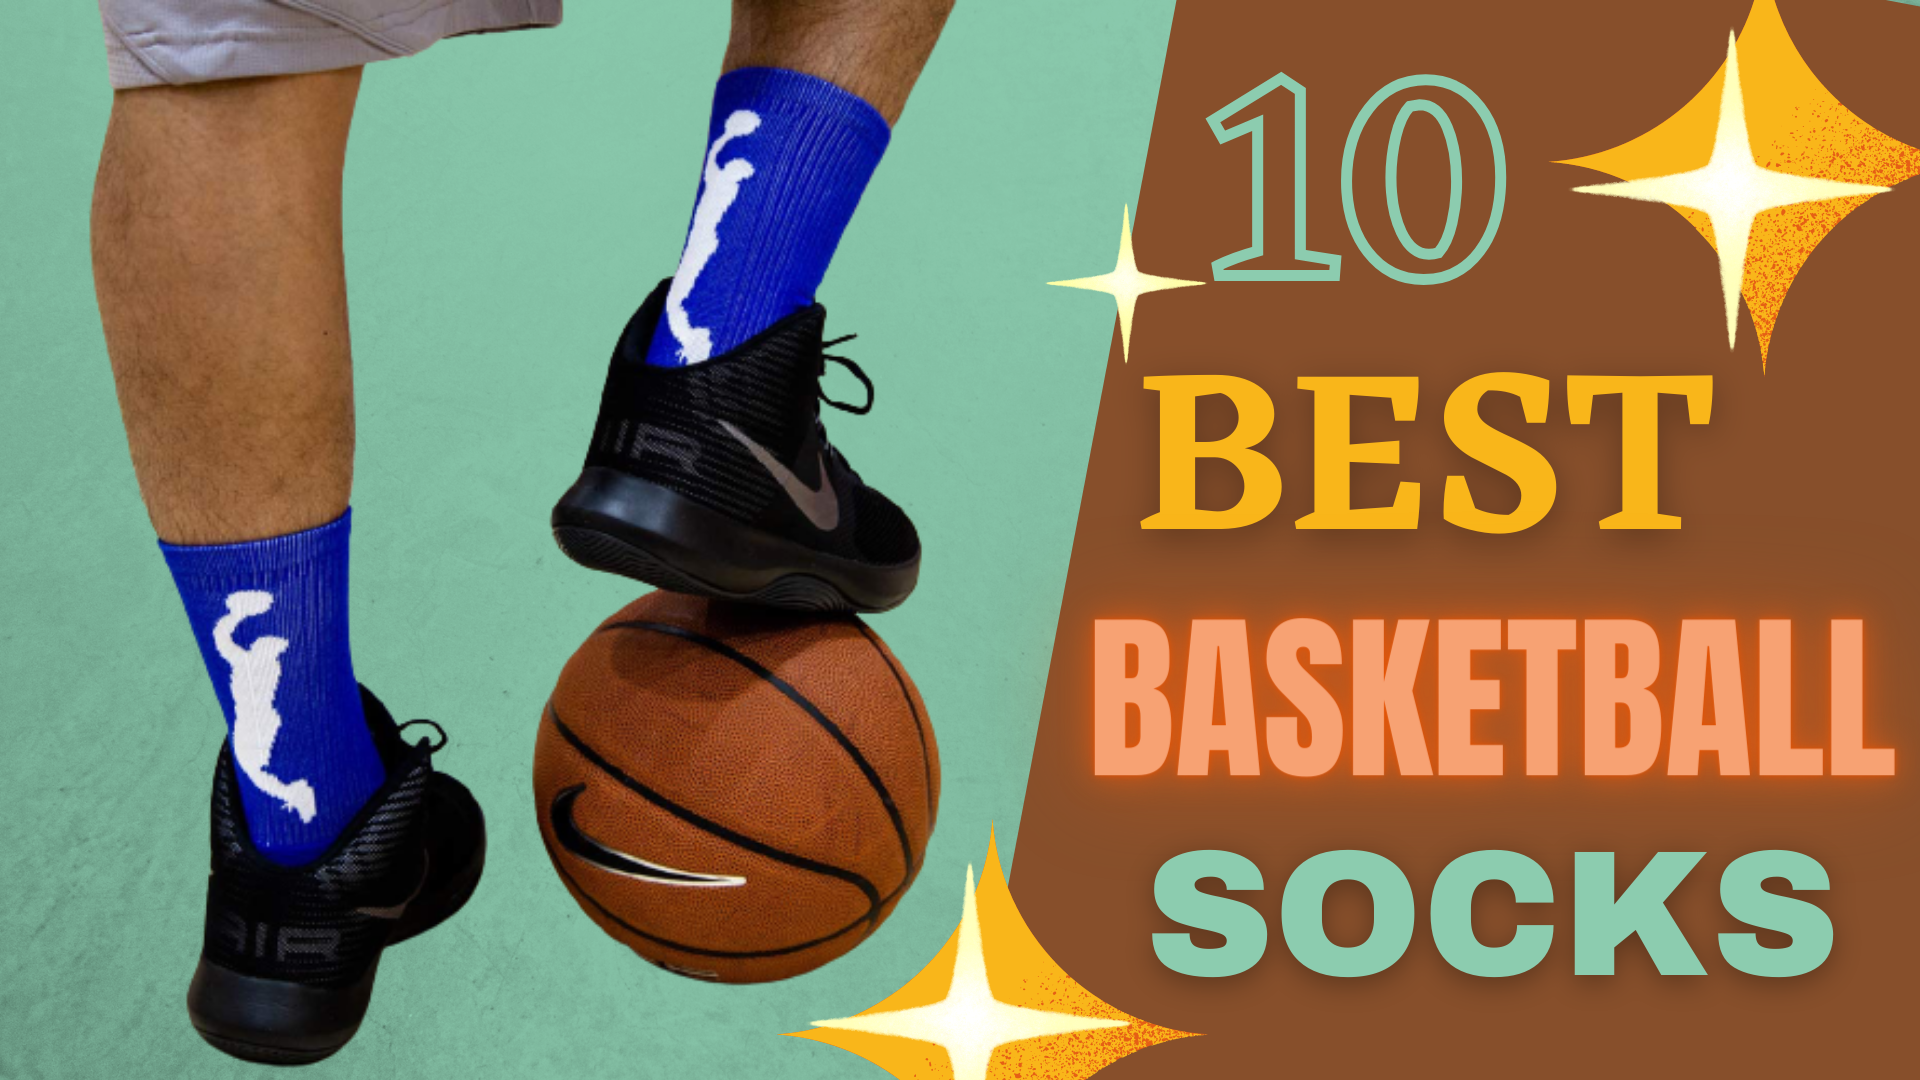 10 Best Basketball Socks -Review